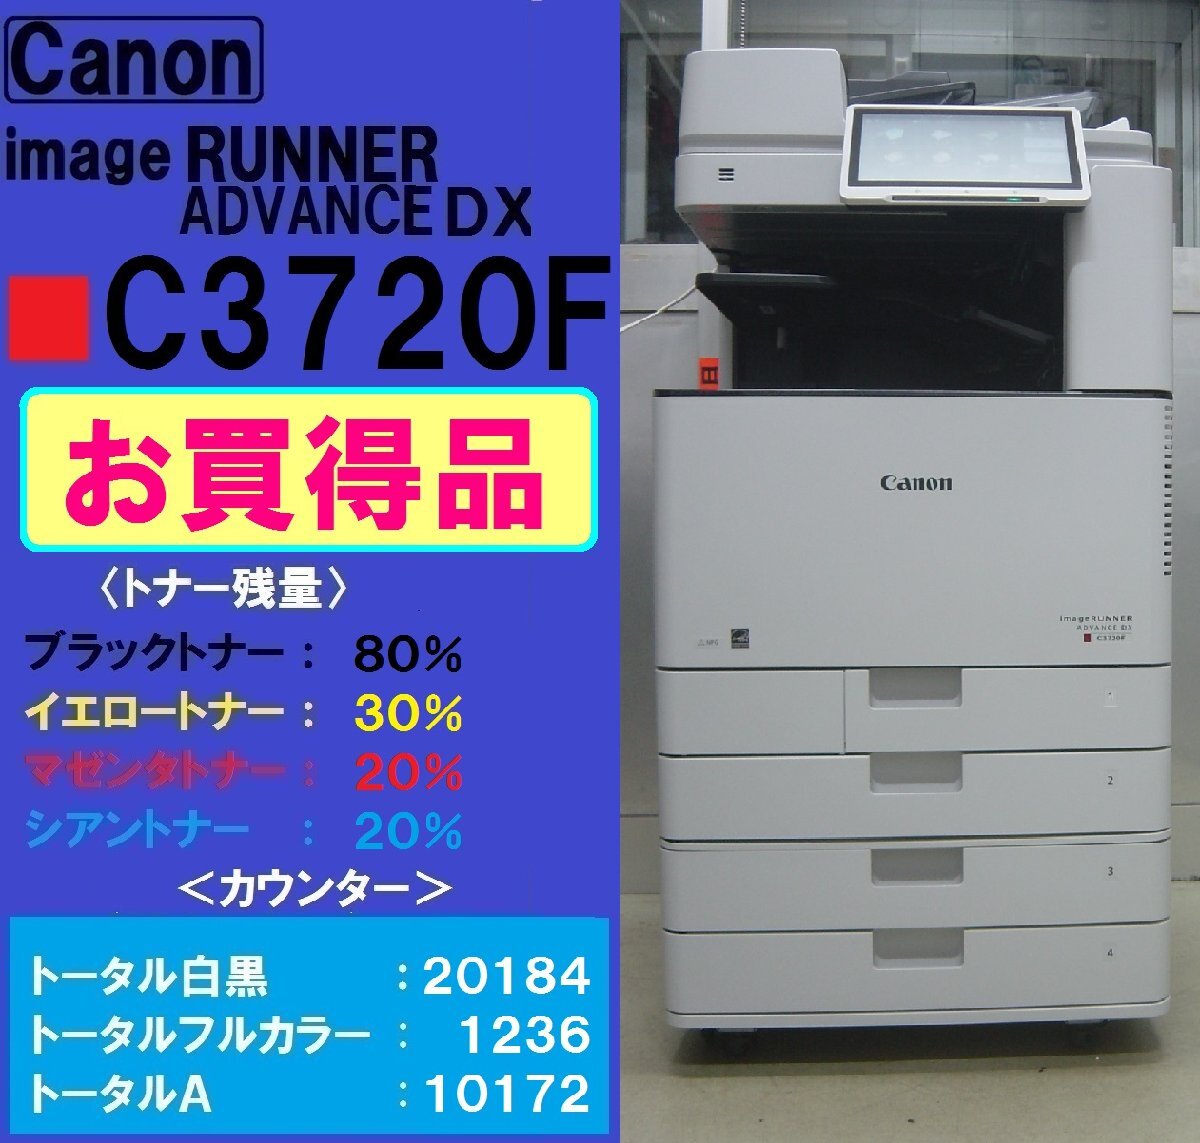  выгодная покупка!! красивый Canon полный цветная многофункциональная машина ADVANCE DX C3720F* беспроводной LAN* Miyagi departure *